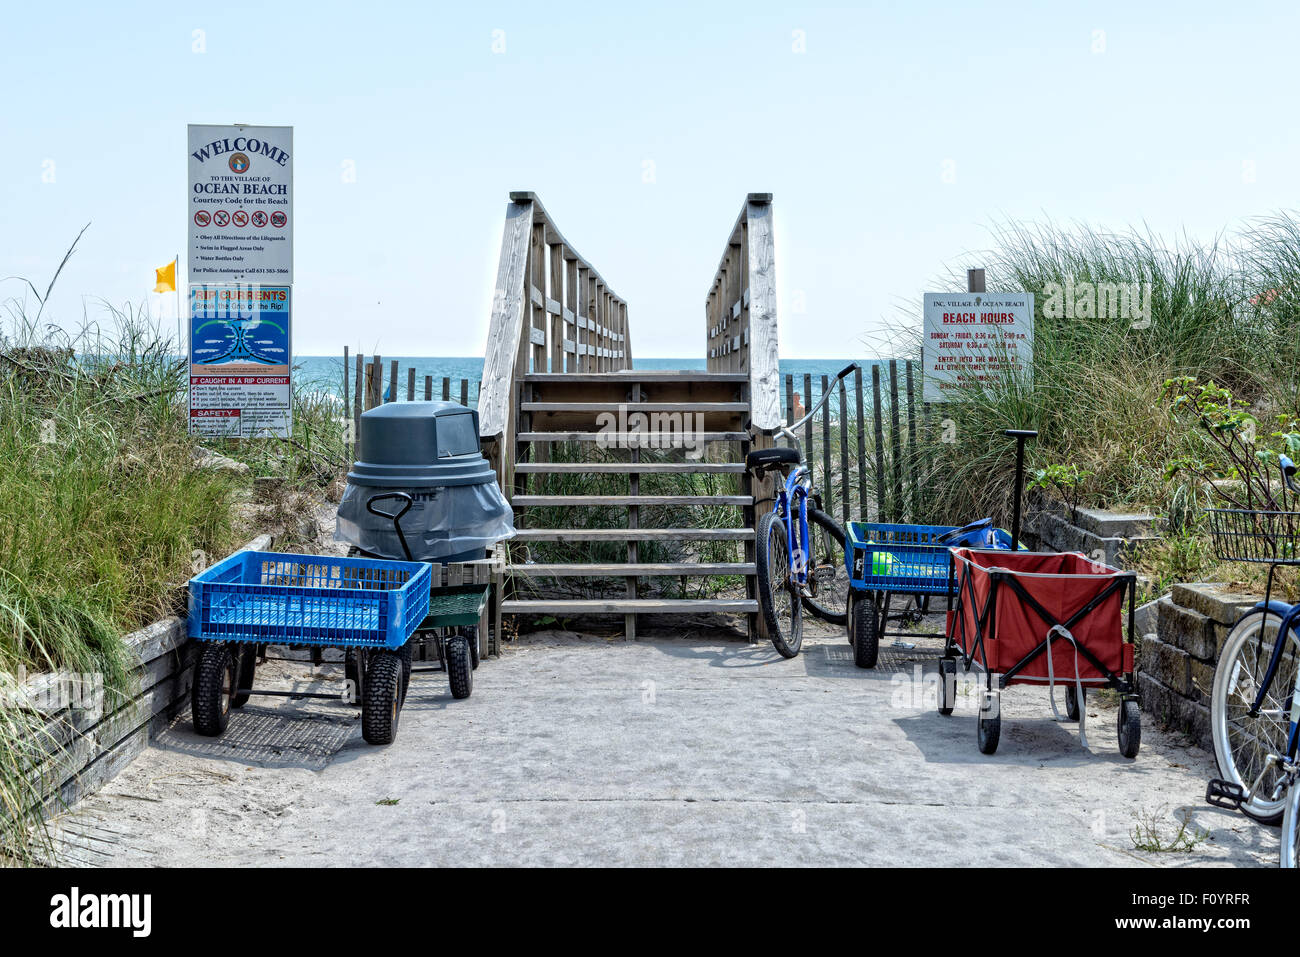 Eingang zum Ocean Beach, Fire Island, New York.  Ein Seaside Resort Community keine Autos erlaubt.  Bewohner-Wagen und Motorräder links ein Stockfoto